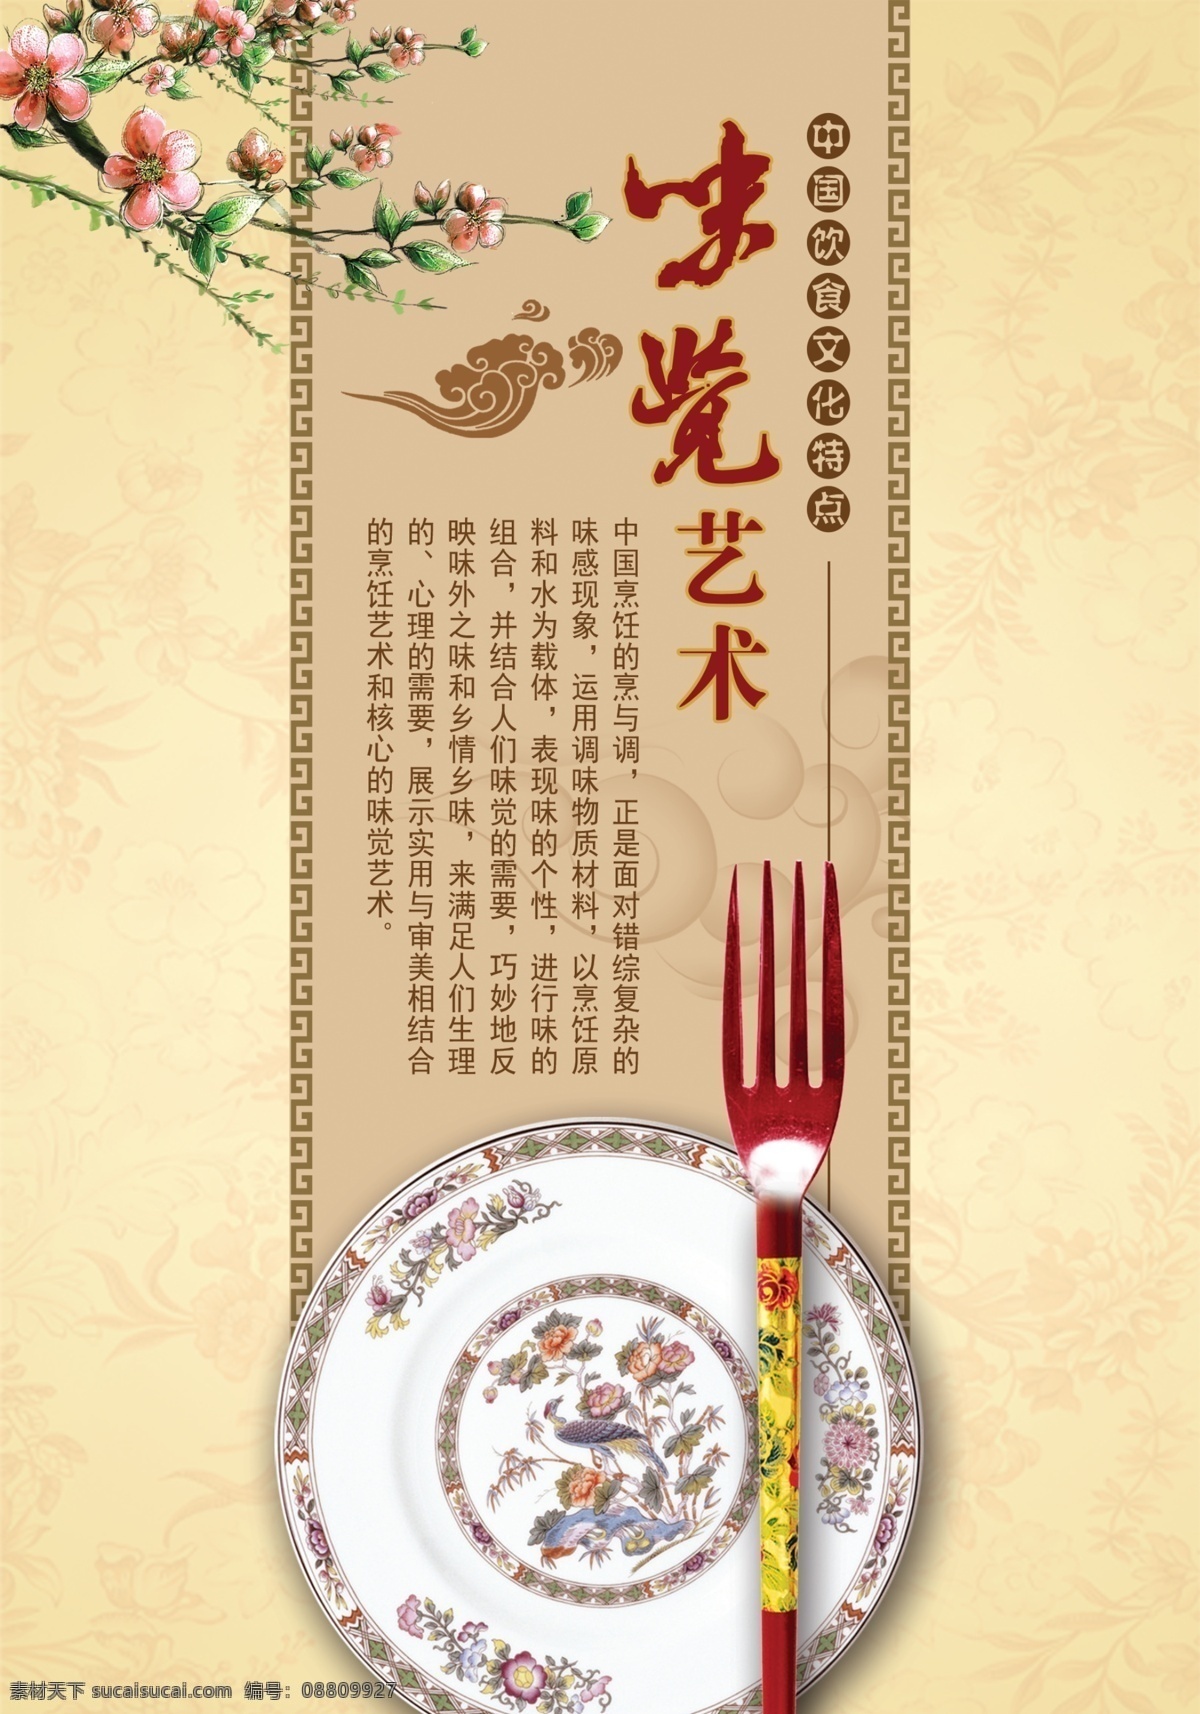 饮食文化 风味多样 食医结合 中国饮食文化 中国餐饮文化 饮食海报 饮食文化海报 味觉艺术